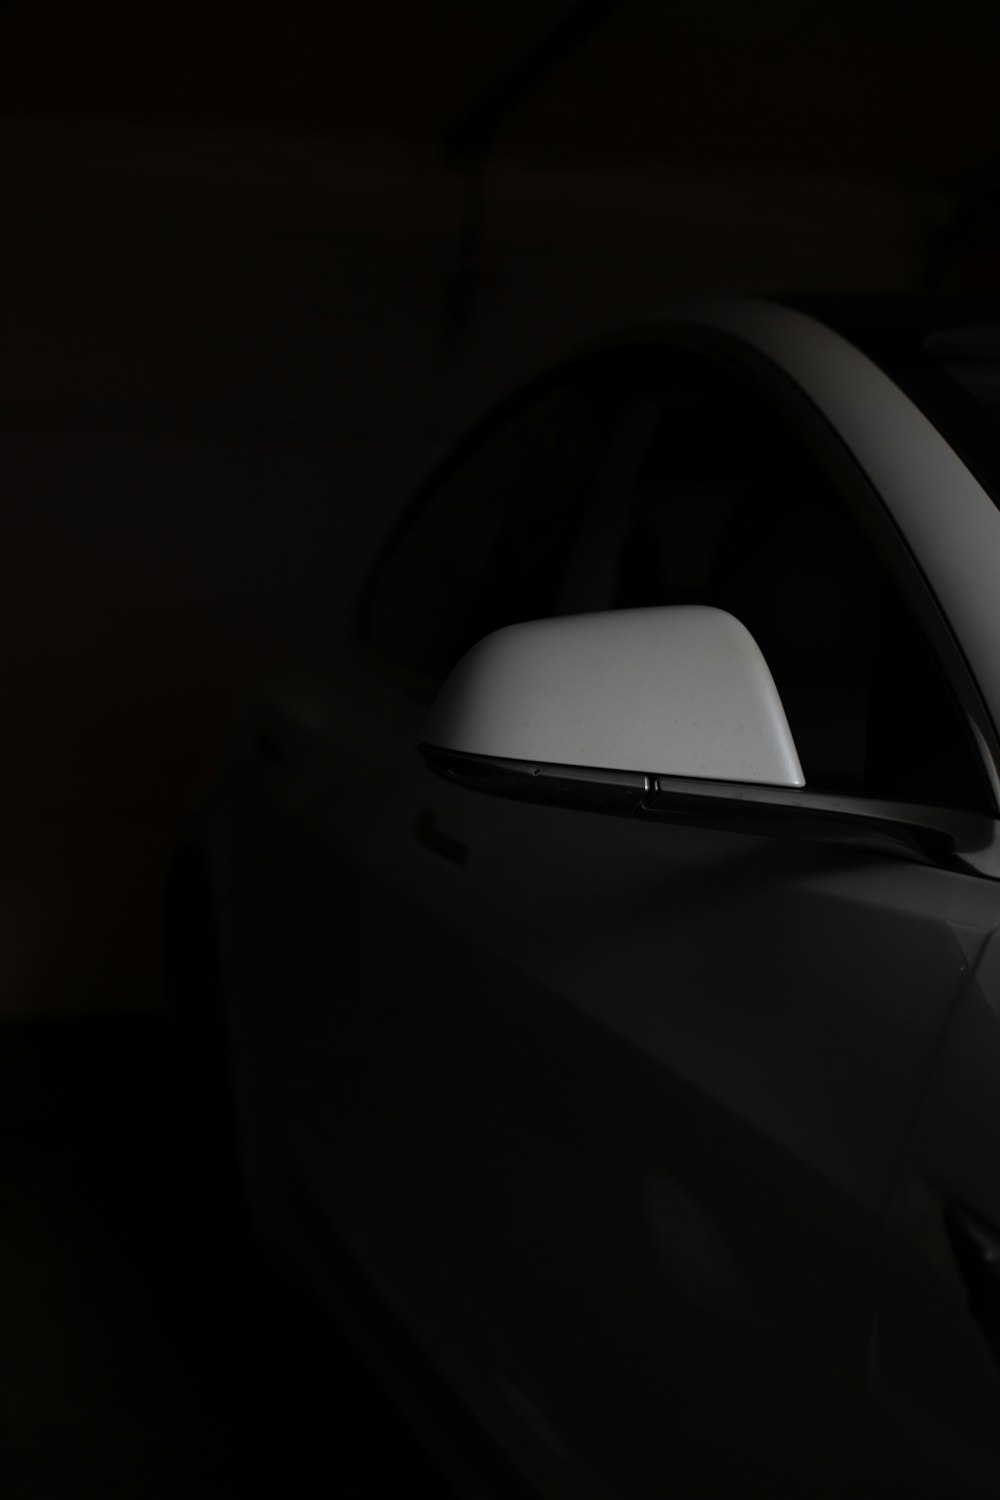 어둠 속에서 자동차의 흑백 사진